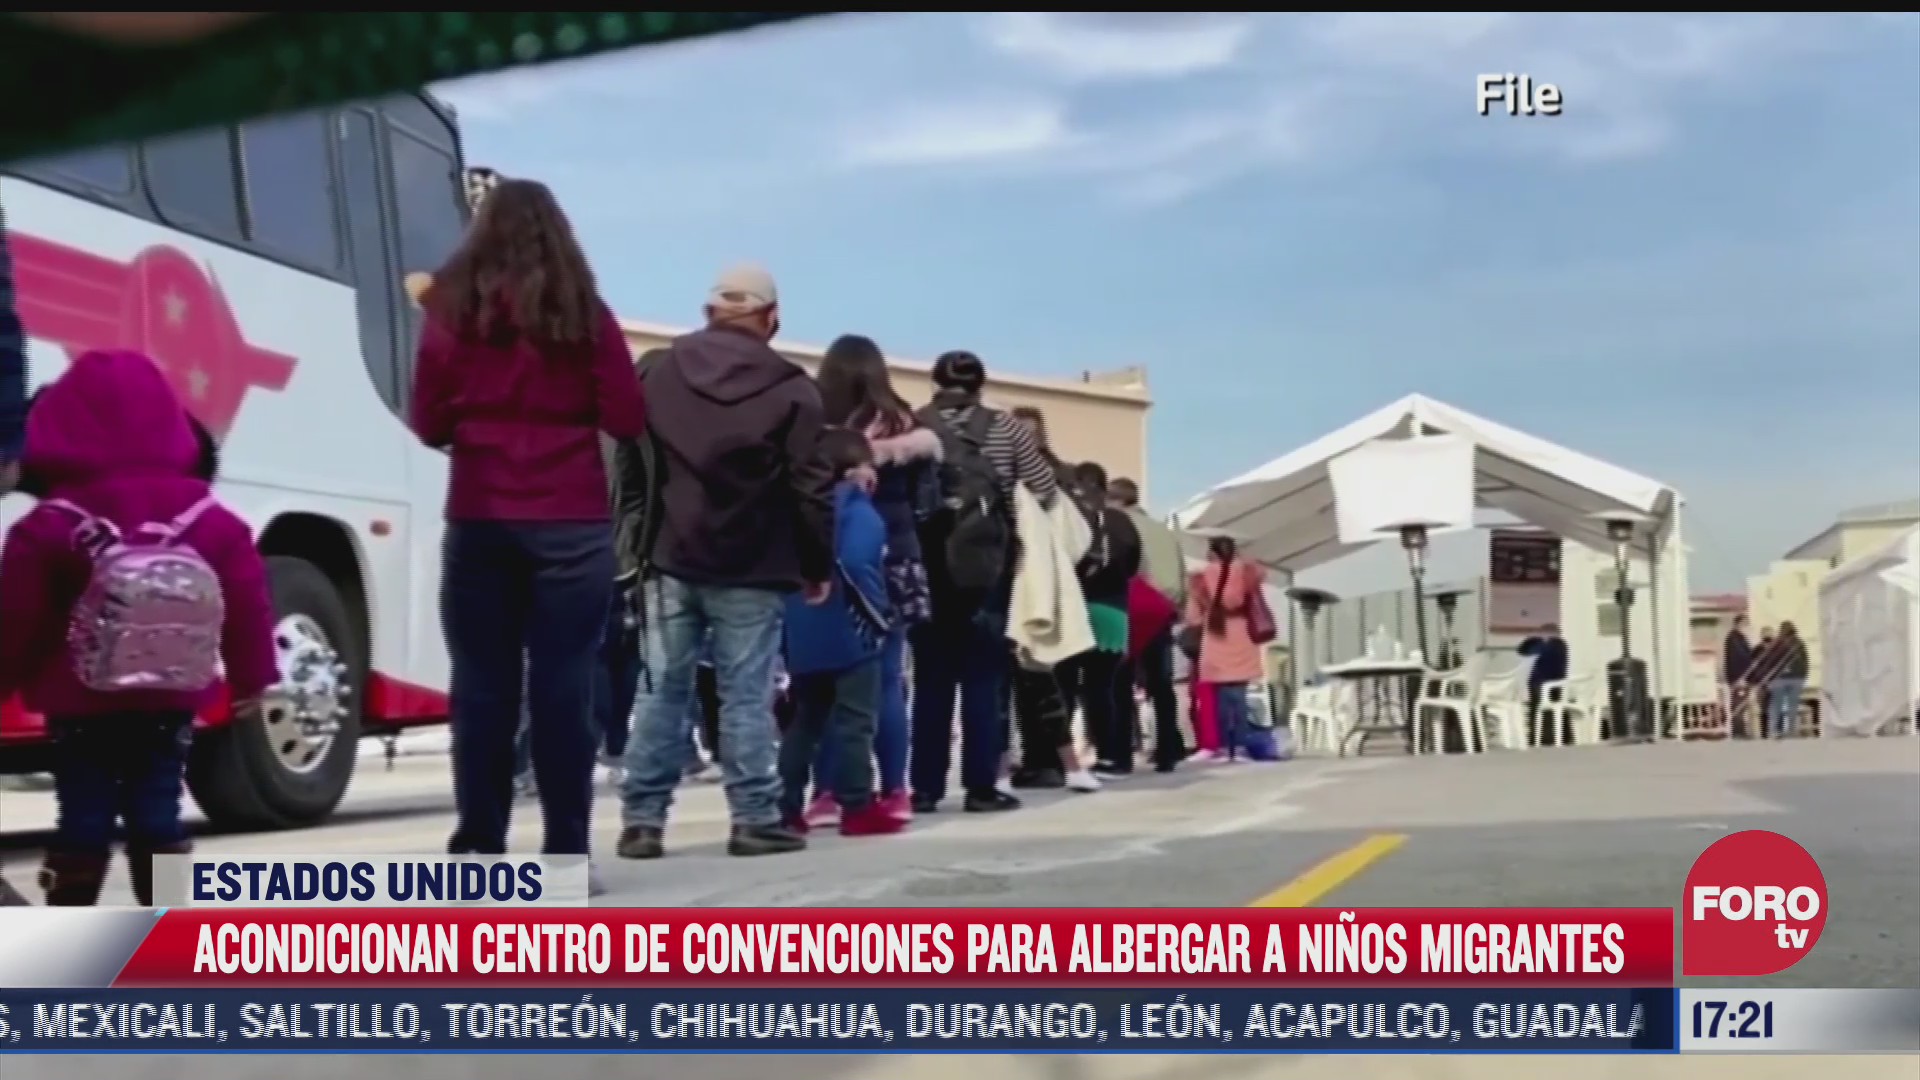 Acondicionan centro de convenciones para albergar a niños migrantes en EEUU